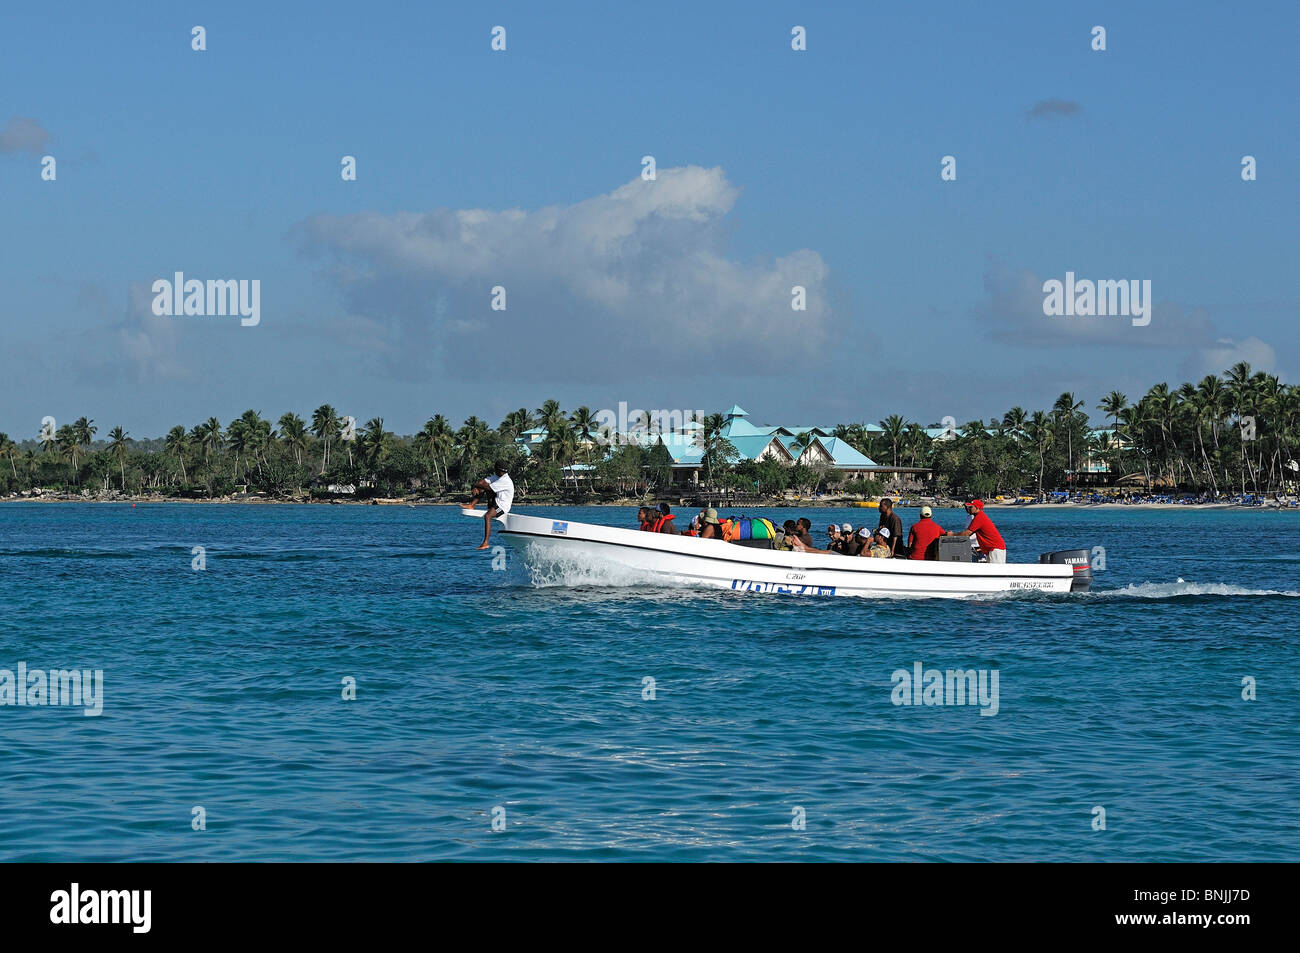 Boat Bayahibe La Romana Dominican Republic palm trees beach travel tourism holiday Caribbean Stock Photo